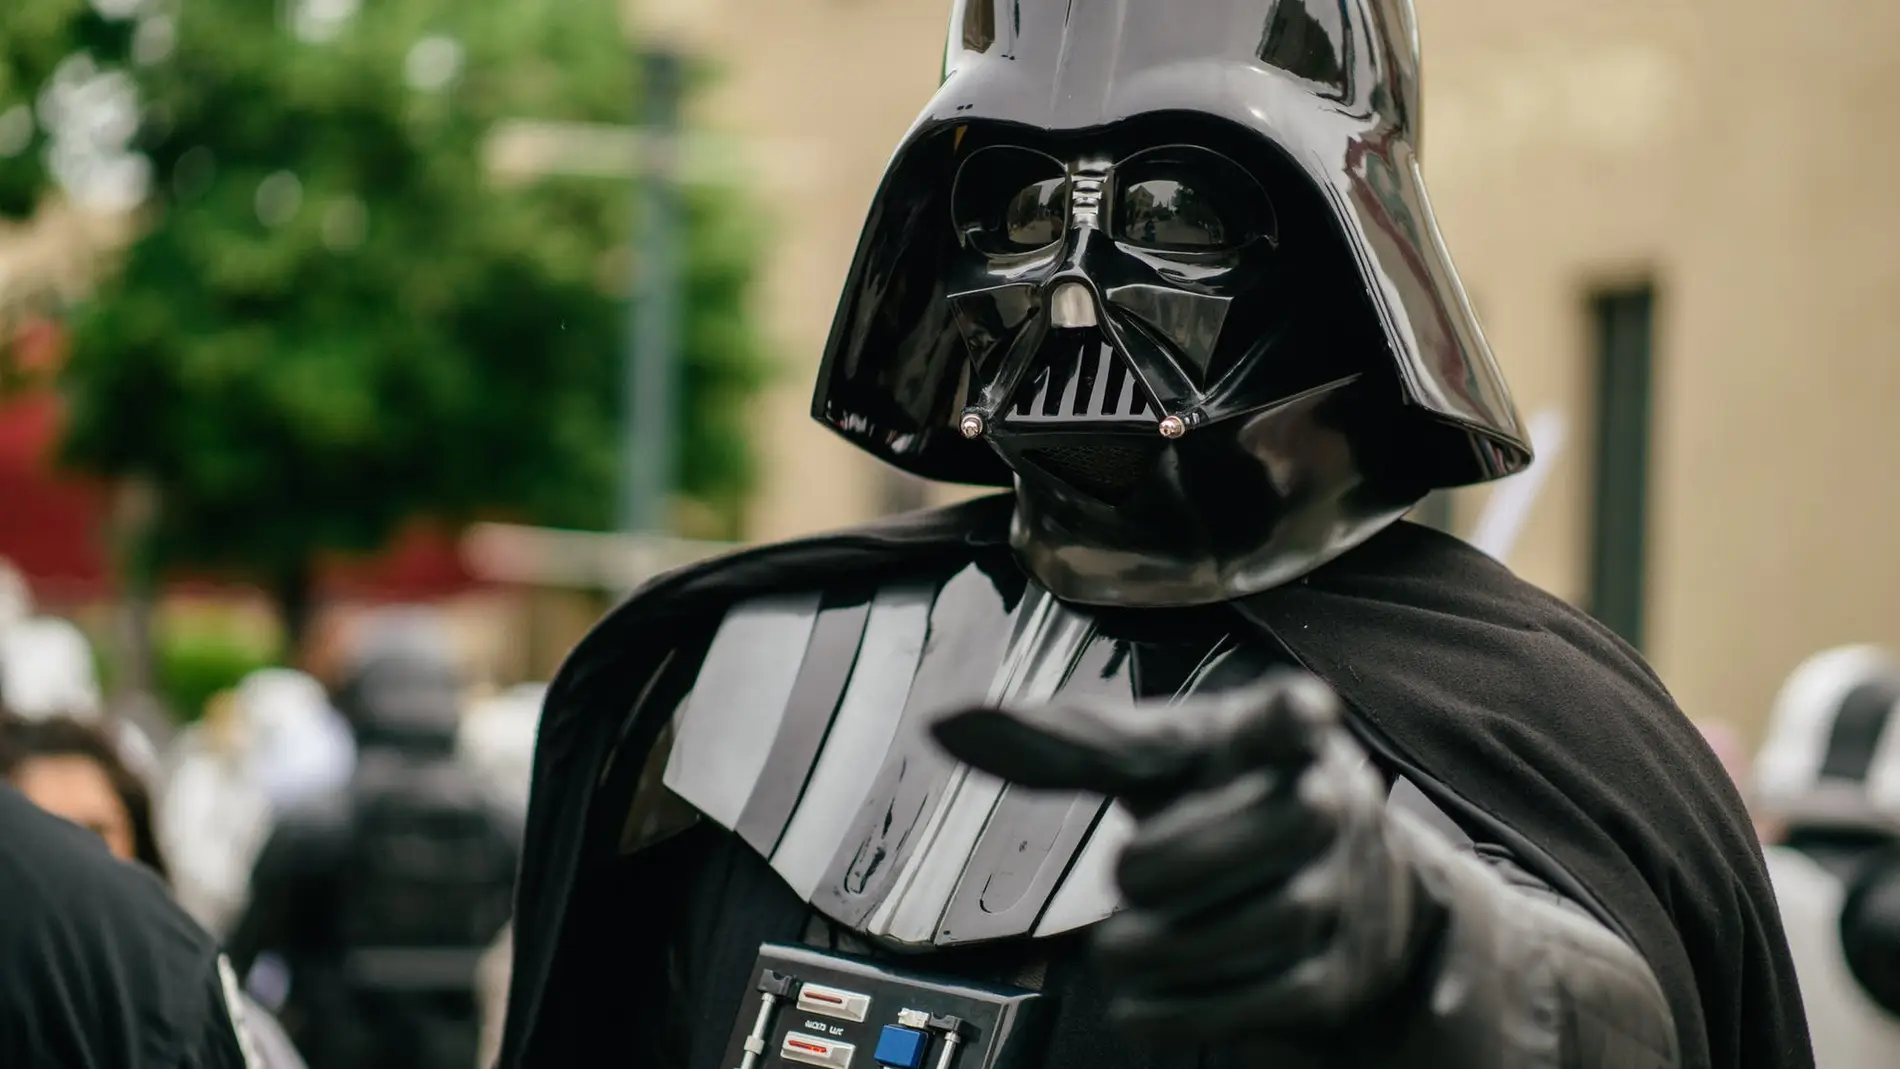 Este es el fallo de guion que dio lugar al icónico casco de Darth Vader